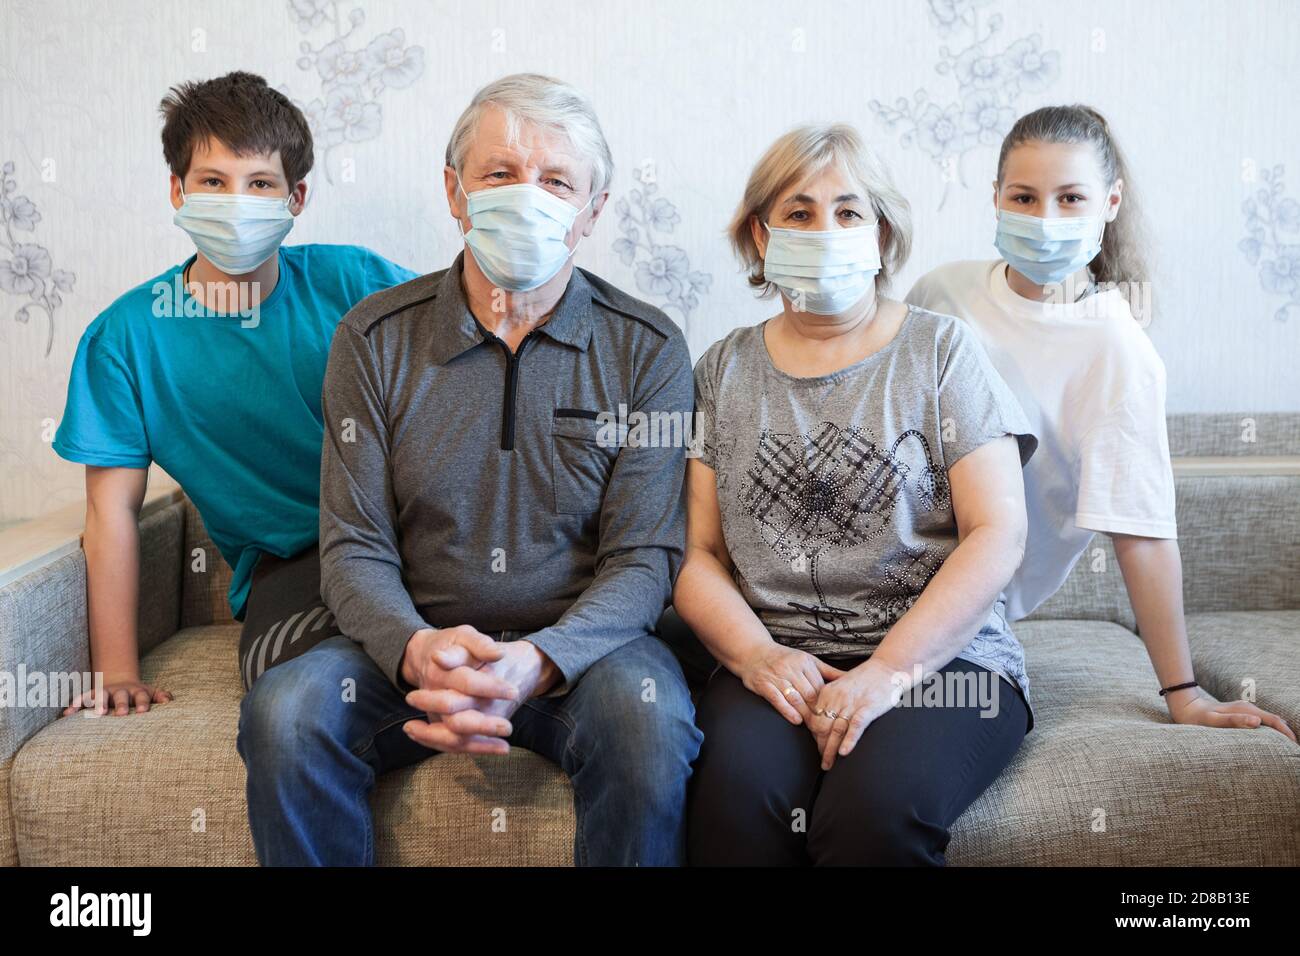 Familie, die während einer Coronavirus-Pandemie zu Hause bleibt, Sicherheitsmaske trägt, zusammen auf einer Couch sitzt und die Kamera anschaut Stockfoto